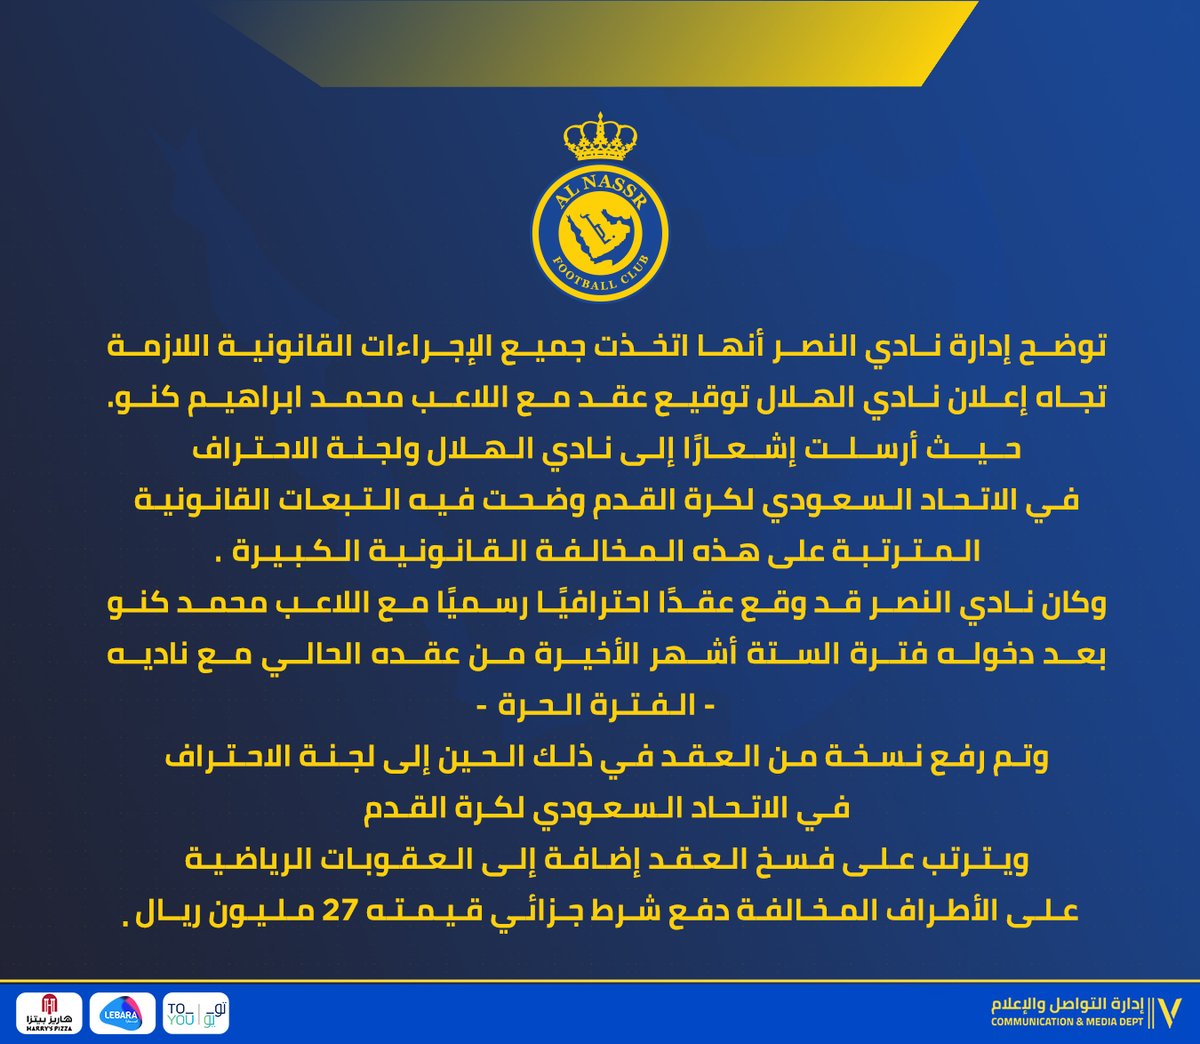 📄 | إدارة نادي #النصر تبدأ إجراءاتها القانونية بخصوص عقد اللاعب محمد كنو